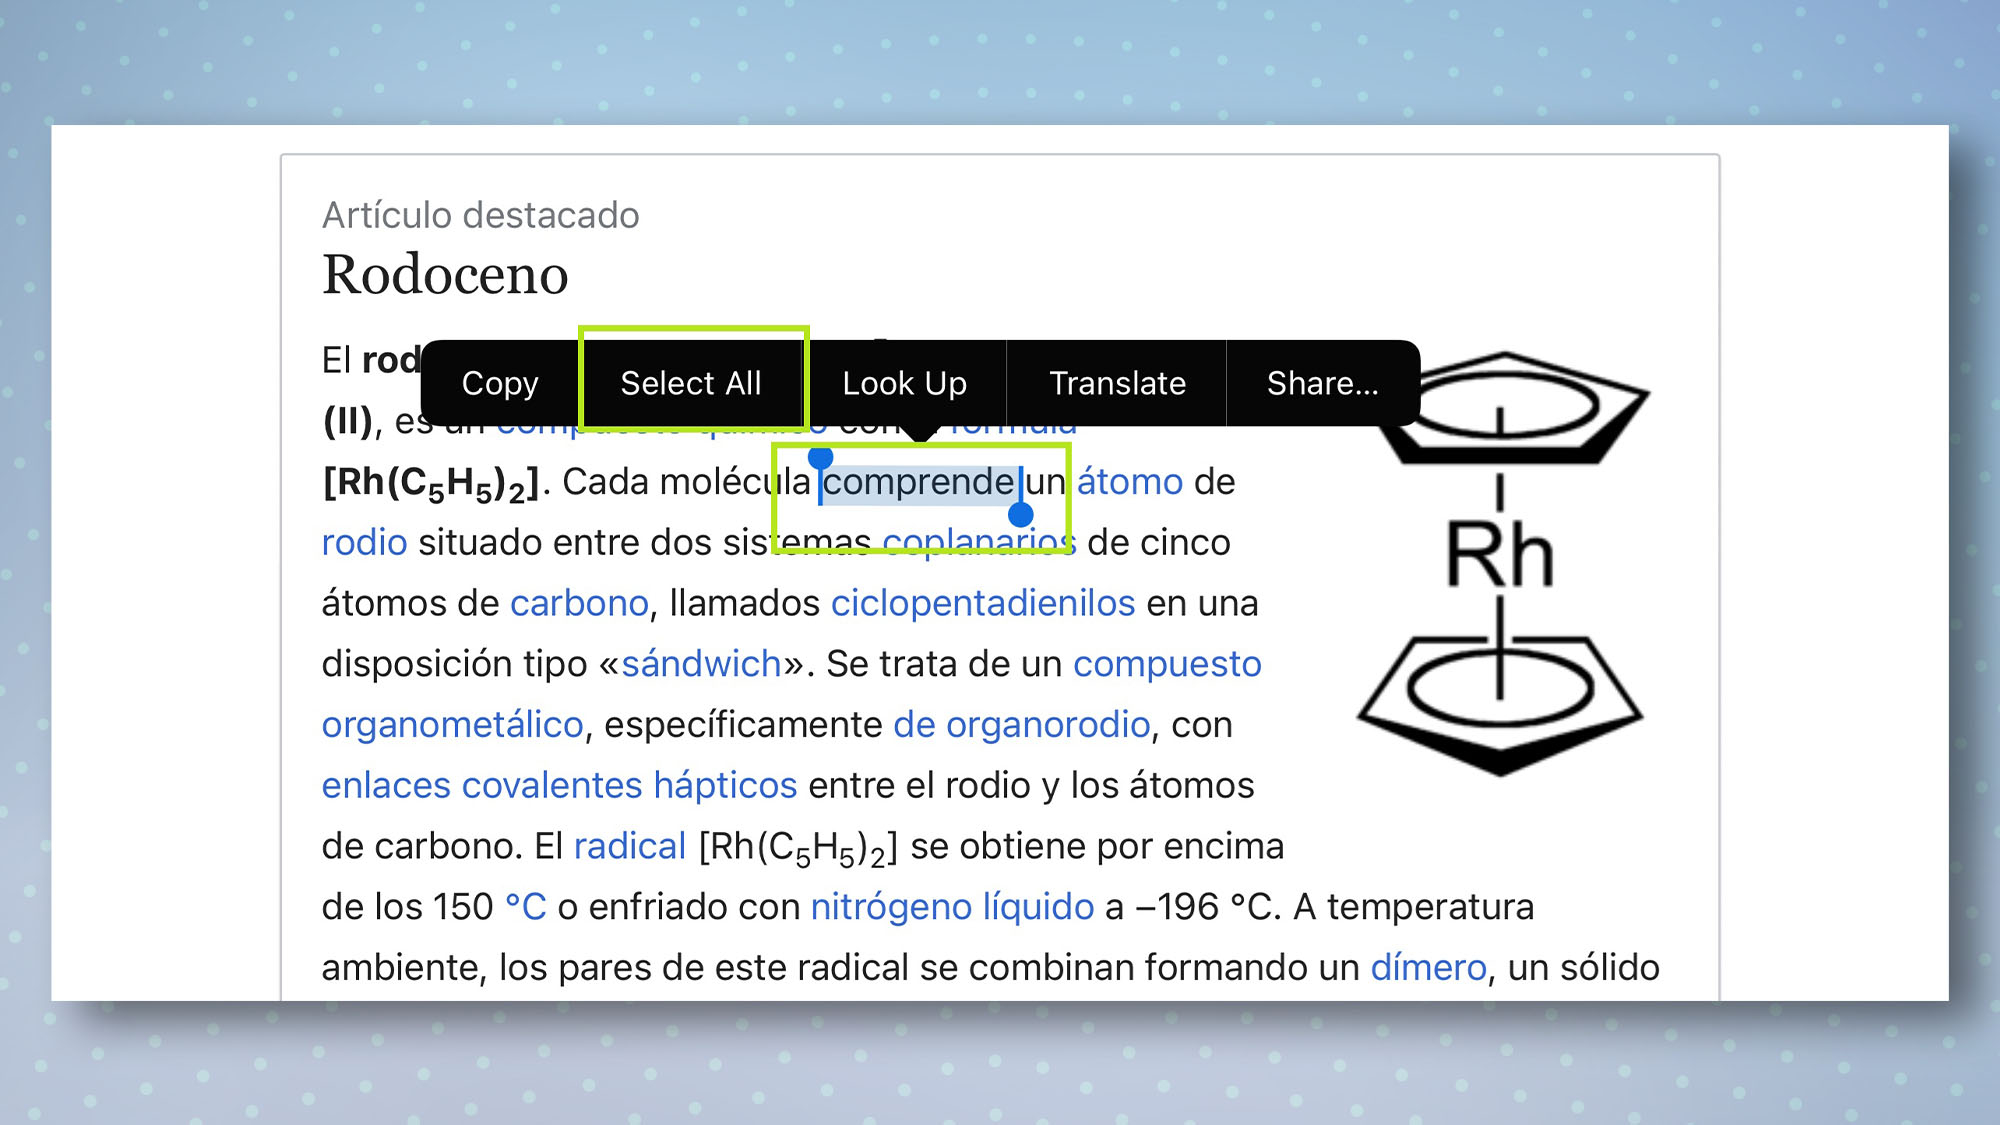 Страница Википедии на испанском языке